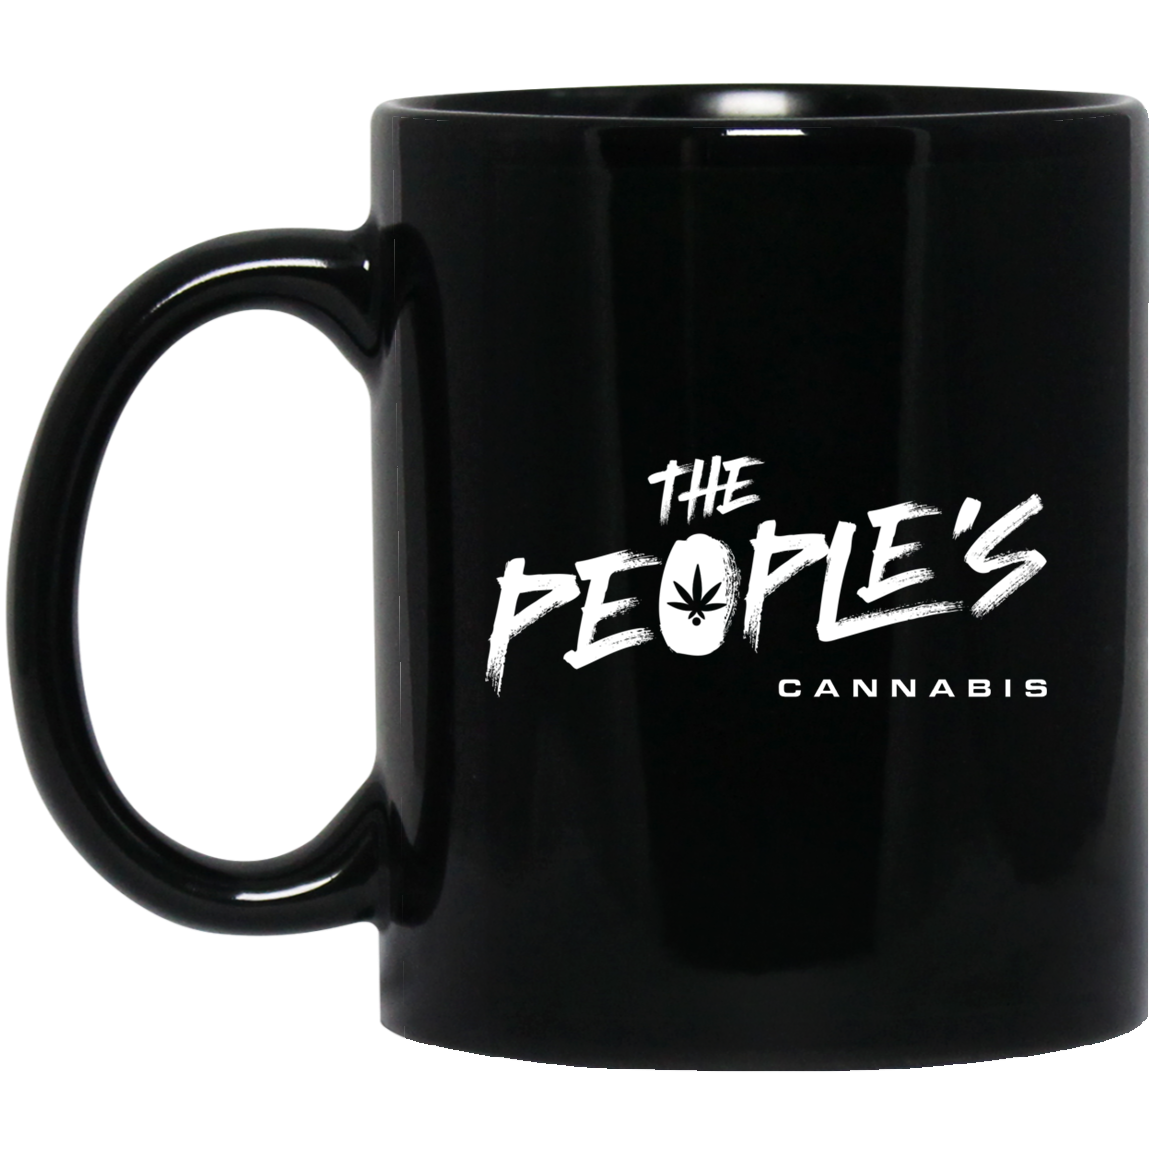 The People's (C) 11 oz. Black Mug